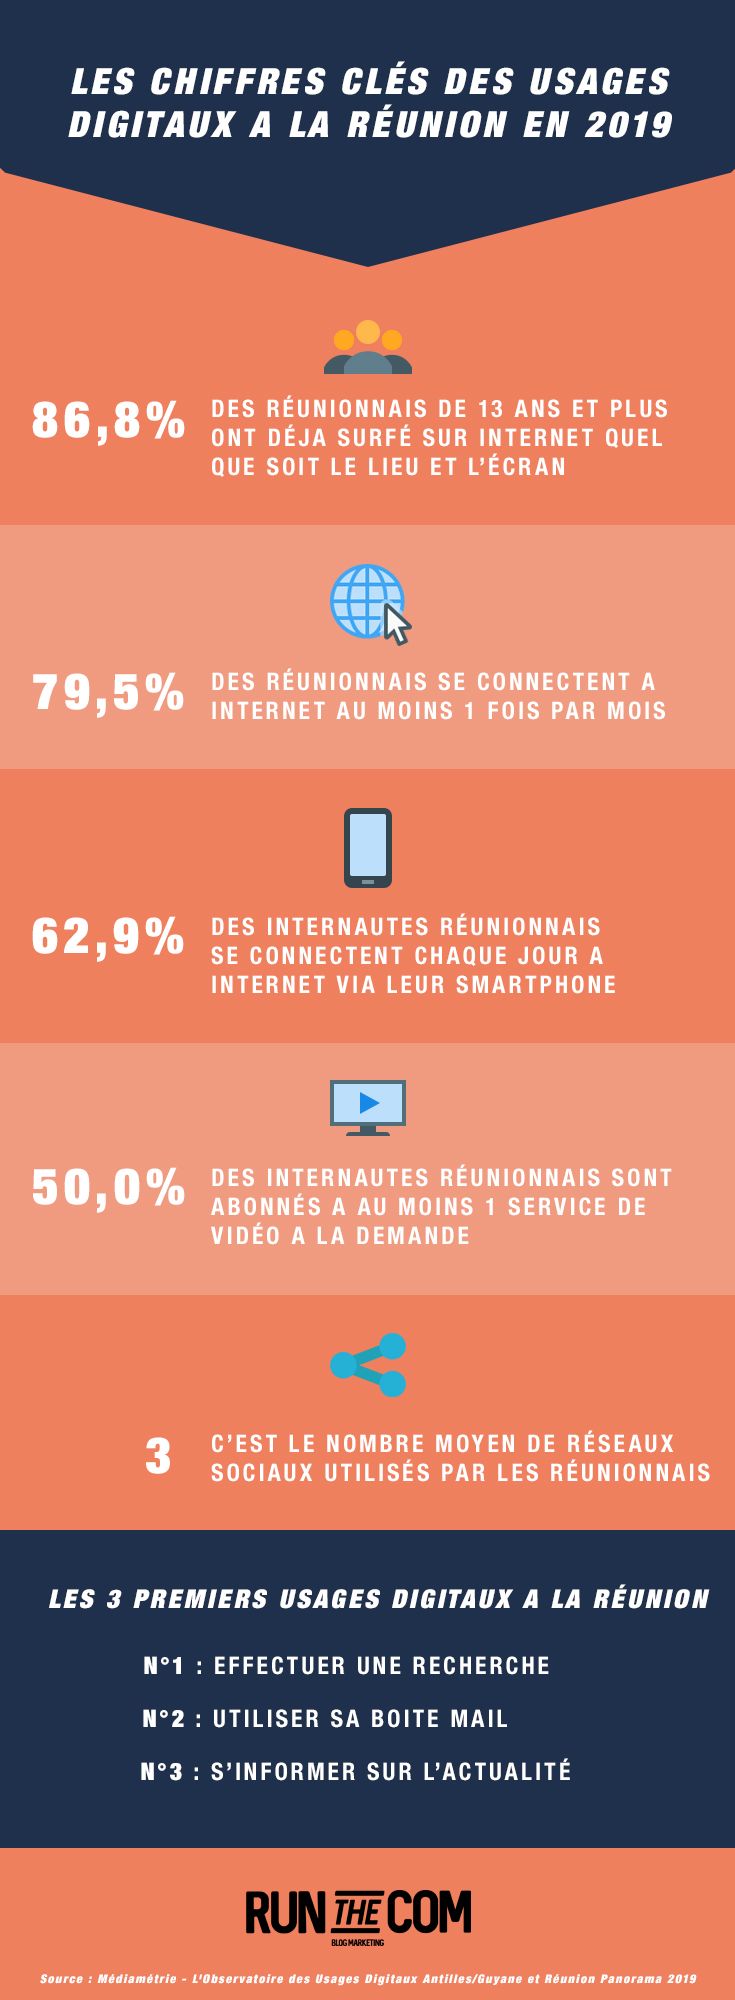 Infographie : Les chiffres clés des usages digitaux à La Réunion en 2019 - Création : Antoine Chadufau, créateur du blog marketing Run The Com